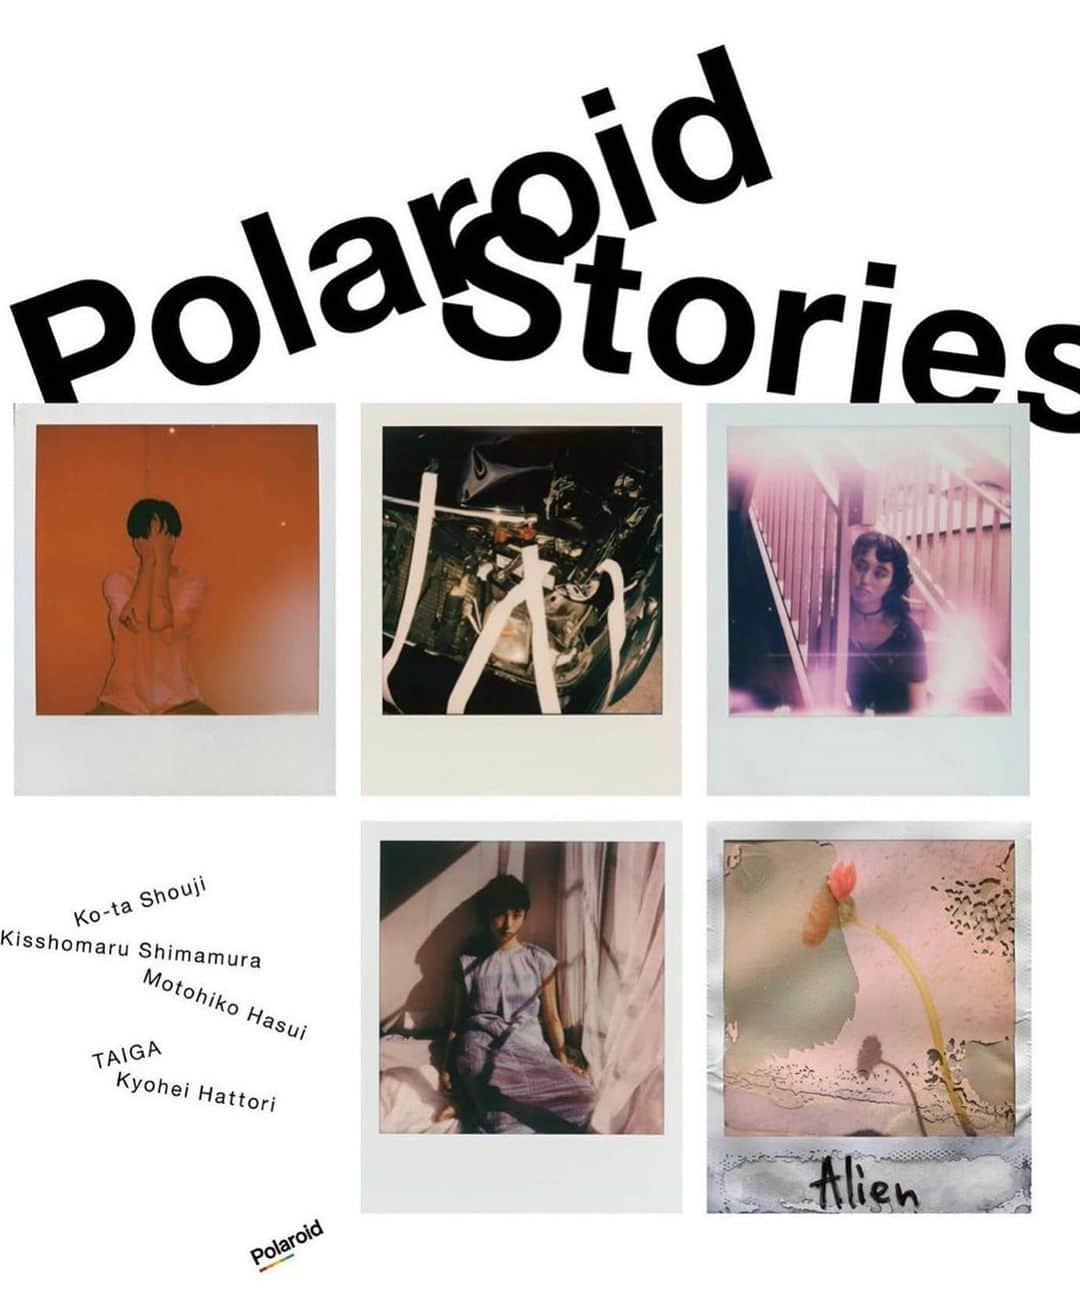 蓮井元彦さんのインスタグラム写真 - (蓮井元彦Instagram)「蓮井元彦は9月7日(月)よりzakuraにて開催のグループ展『Polaroid Stories』に参加いたします。 また、100部限定のZINE『Personal Matters Polaroids』を会場にて販売いたします。  ・  嶌村吉祥丸、東海林広太、TAIGA、蓮井元彦、服部恭平らによる『Polaroid Stories』展開催  この度、渋谷のギャラリーzakura では、東京をベースに活躍しているアーティスト 5名によるポラロイド写真展『Polaroid Stories』を開催します。   デジタルカメラがスタンダードとなっている近年、若者を中心にフィルムカメラの人気が高ま っています。中でもインスタグラムの影響もあってか、ポラロイドカメラによるアナログの作り出すレトロ感や、味わいある独特な⾵合いが再び注目を集めています。  本展覧会では近年活躍がめまぐるしいアーティストにフォーカス。  嶌村吉祥丸、東海林広太、TAIGA、蓮井元彦、服部恭平ら５名による撮り下ろしのポラロイド写真展となります。   コロナ渦の中、以前よりも増して急速に進むデジタル化。 5 名のアーティストたちが、彼らの身近な世界での日々の記録、風景、ポートレイトなど、独自の視点で捉え発表します。 デジタルネイティブ世代が放つその⼀瞬とは？  アナログの持つ独特の色彩、コントラスト、粒子感、そして彼らの作り出す世界観はここでしか見ることができない一点物の新作のみ。  皆様のご来場お待ちしております。  ・  『Polaroid Stories』   ⽇程：2020年 9⽉7日（月）～ 9月16日（水）  時間：13:00〜19:00 入場無料 (最終日は 17:00 まで)  会場：zakura 〒150-0031 東都渋⾕区桜丘町 14-5-103 JR 渋谷駅南口より徒歩 5 分  お問い合わせ：info@zakura.tokyo  協賛：Polaroid www.polaroid.com  instagram: @polaroid_̲asia  キュレーション：半沢マリ（zakura）  参加アーティスト  嶌村吉祥丸 @kisshomaru 東海林林広太 @ko_ta_s TAIGA @tgaflm 蓮井元彦 @motohiko_hasui 服部恭平 @kyoheihattori   ・  Personal Matters Polaroids Zine を会場にて 100部 限定で販売いたします。  タイトル : Personal Matters Polaroids 出版日 : 2020年9月7日 出版 : 私家版 デザイン・レイアウト・印刷・製本 : 蓮井元彦 装丁 : ソフトカバー ページ数 : 56 pp サイズ : 148mm x 210mm エディション : 100部 価格 : ¥3000（税別）  ・  お問い合わせ：zakura 担当: 半沢マリ 〒150-0031 東京都渋⾕谷区桜丘町14-5 渋⾕谷サニーヒル103 tel: 090-7172-4616 https://www.zakura.tokyo/  ・  蓮井元彦 / Motohiko Hasui  写真家  1983年、東京都出身。2003 年渡英。Central Saint Martins College of Art and Design を経て London College of Communication で 写真を専攻後、2007 年より東京を拠点に活動。主な写真集に『10FACES』、『Personal Matters』(Bemojake)、『吉岡里帆写真集 so long』(集英社）『Yume wo Miru 』(Bemojake)、『for tomorrow』(Libro Arte) がある。  http://motohikohasui.com」9月6日 21時52分 - motohiko_hasui